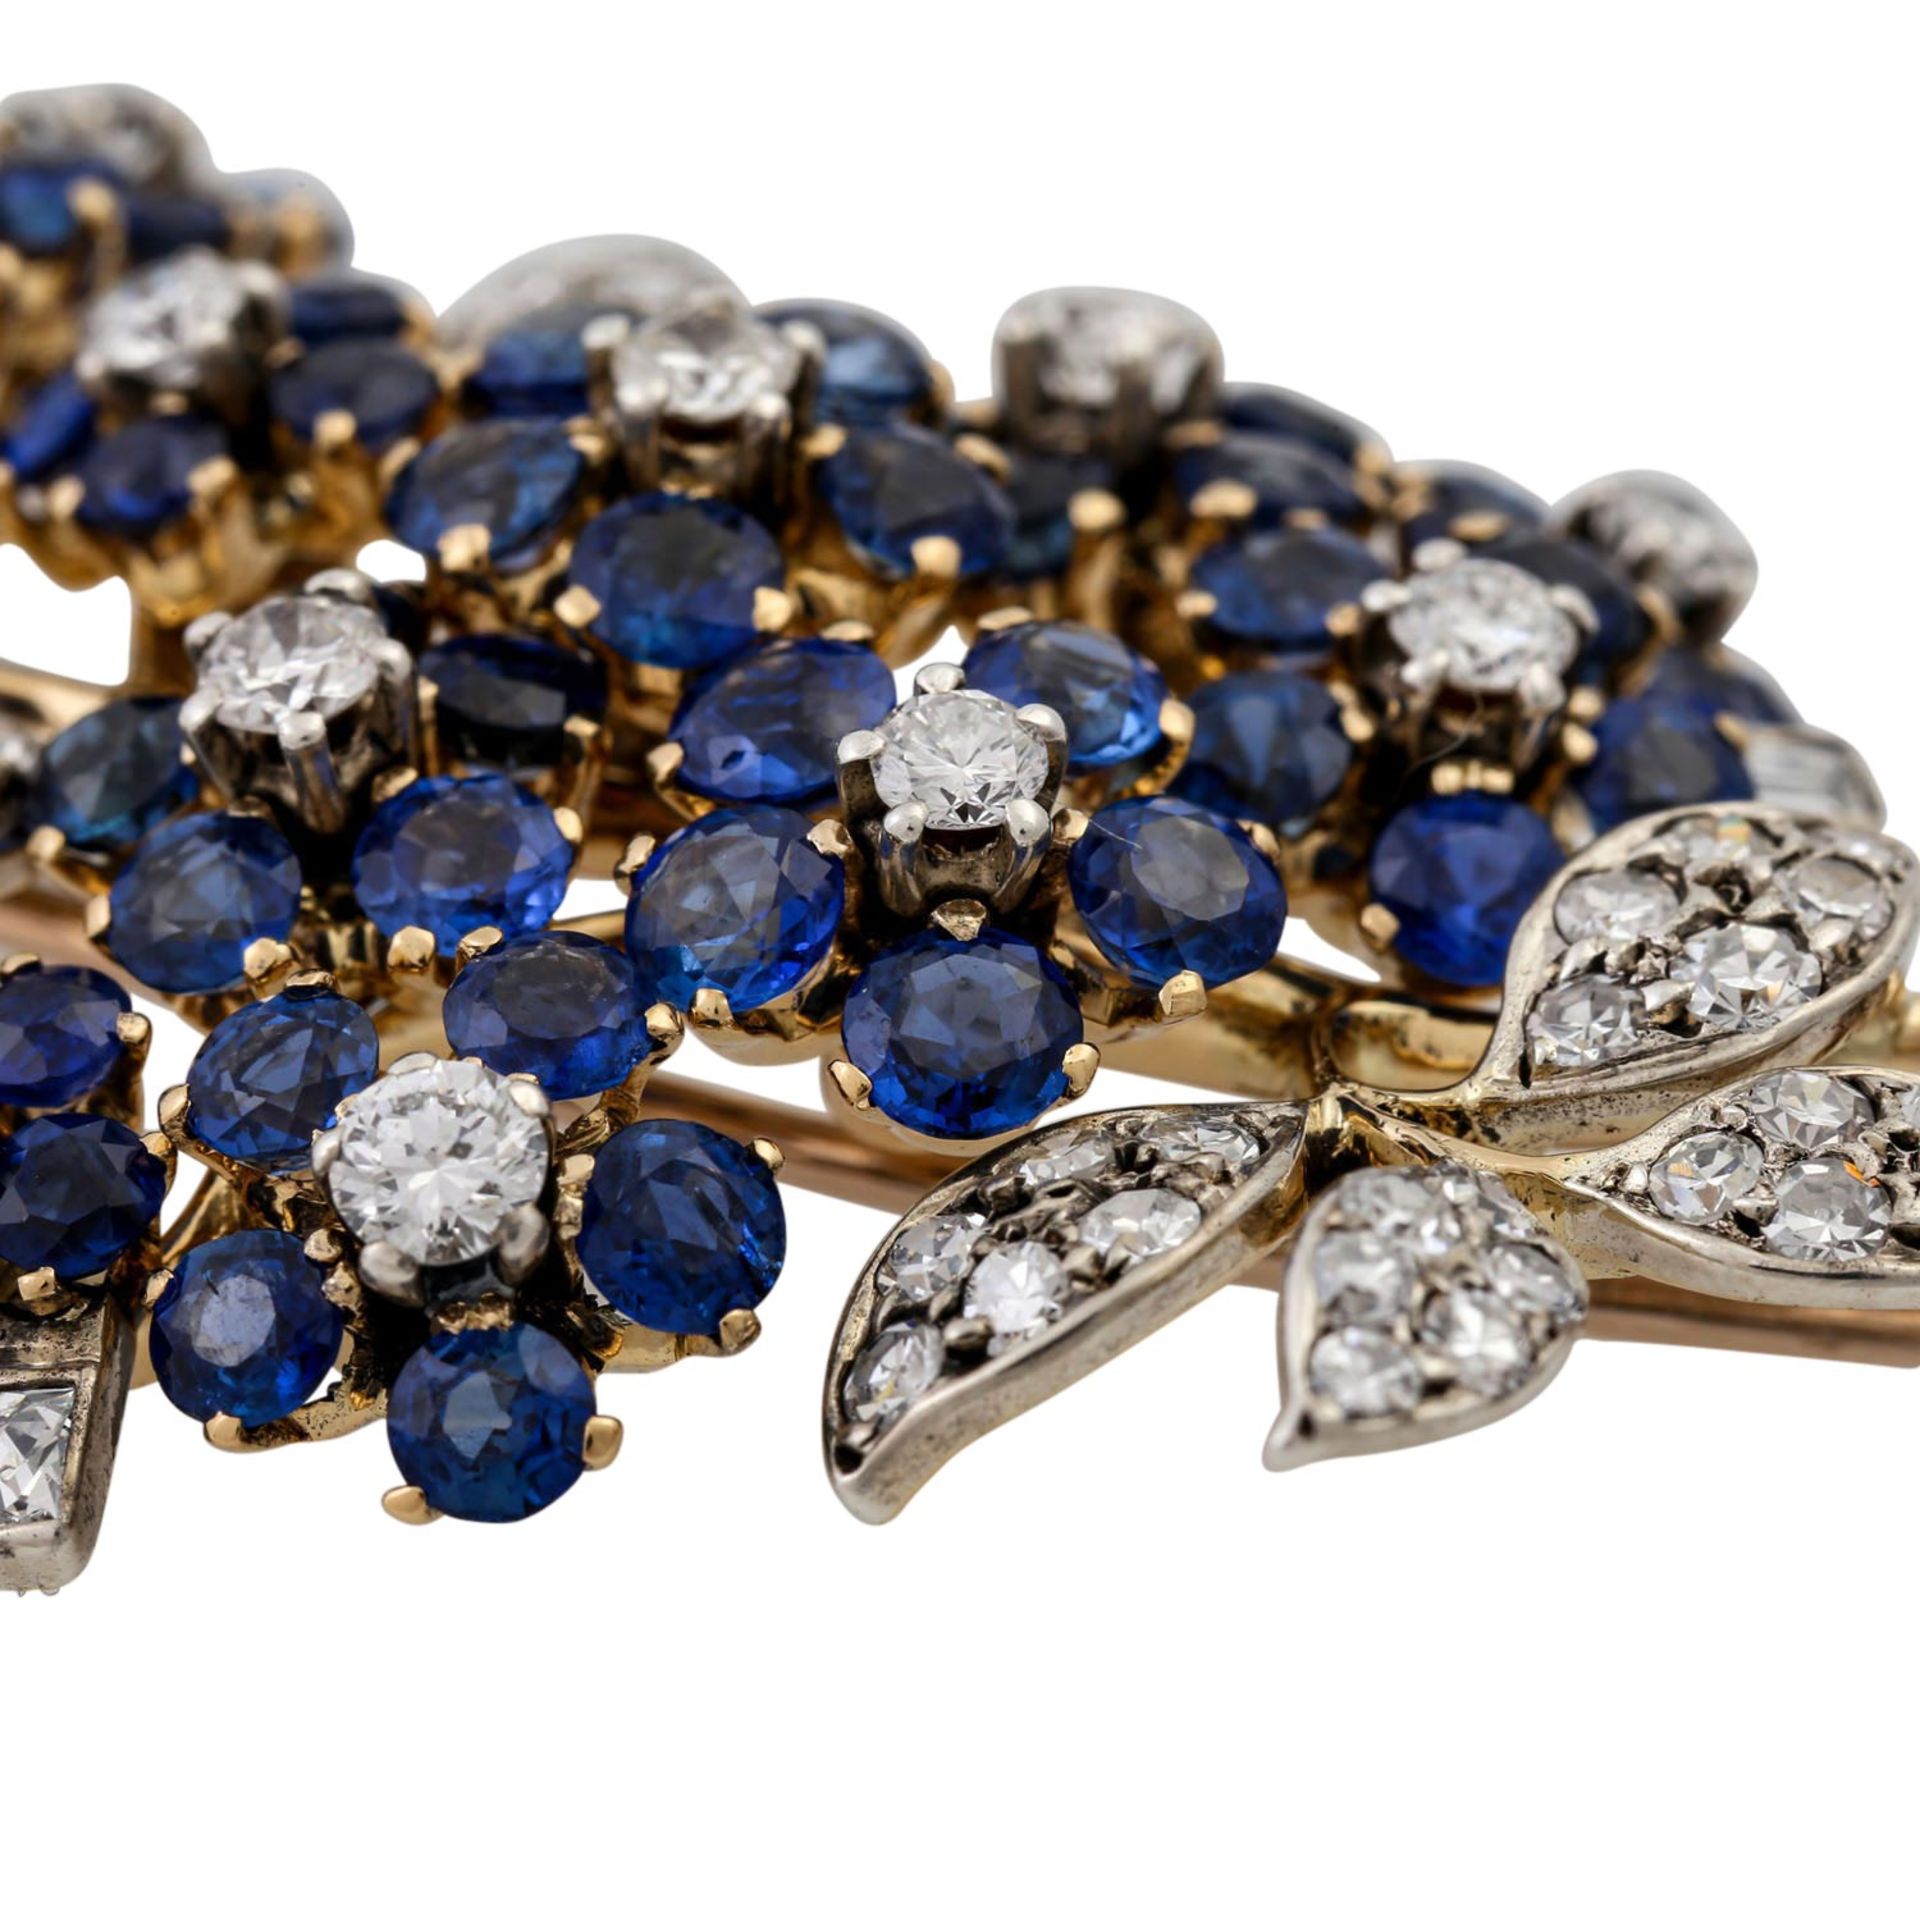 Feine Juwelenbrosche mit Saphiren und Diamanten,WBW (2013): 20.300 €, detailreiche B - Image 5 of 5